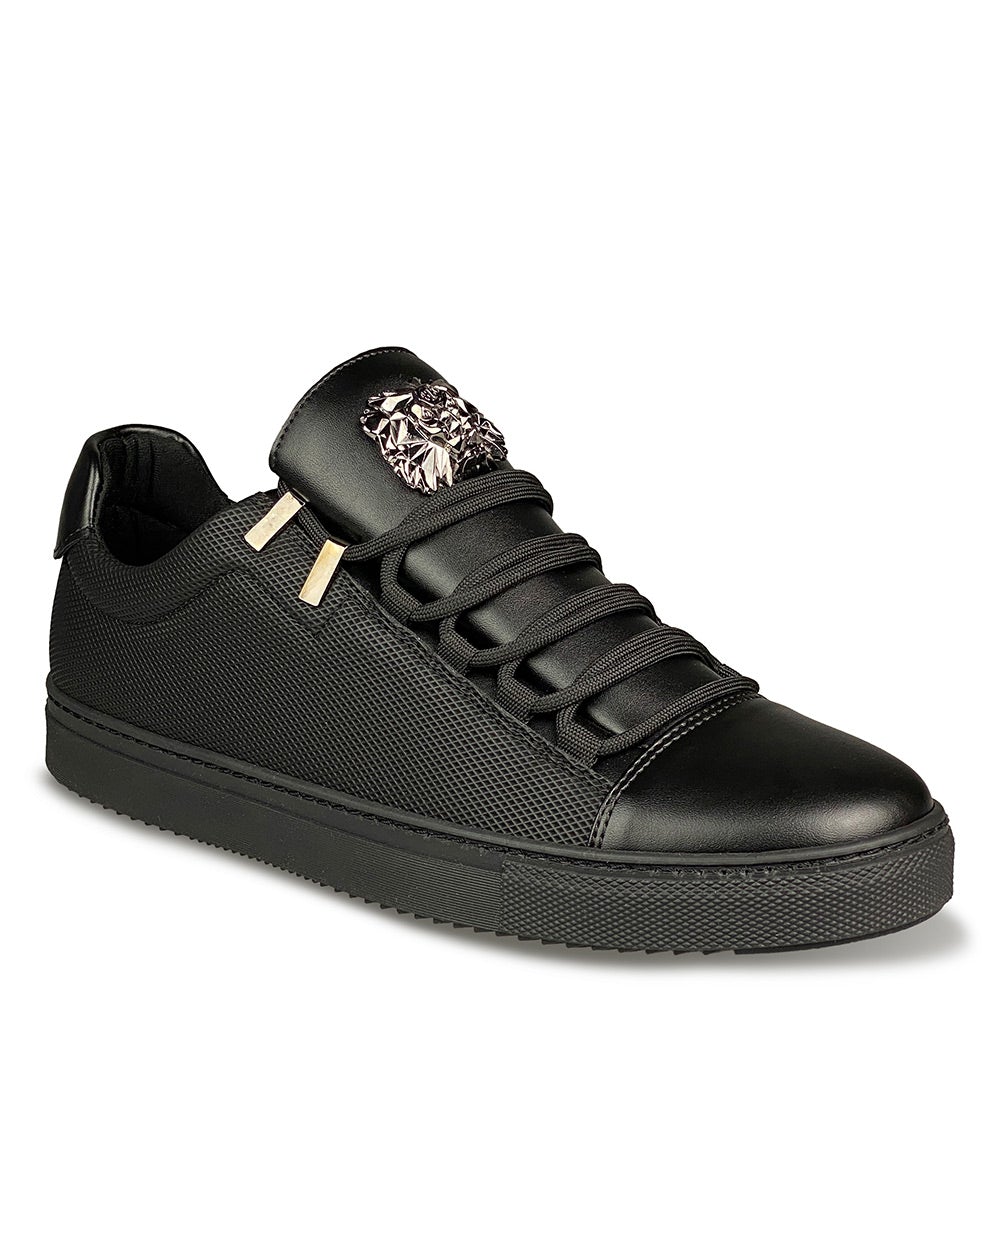 Chaussures Sneakers noir tendance à lacets et badge métal Lion et semelle noire pour homme